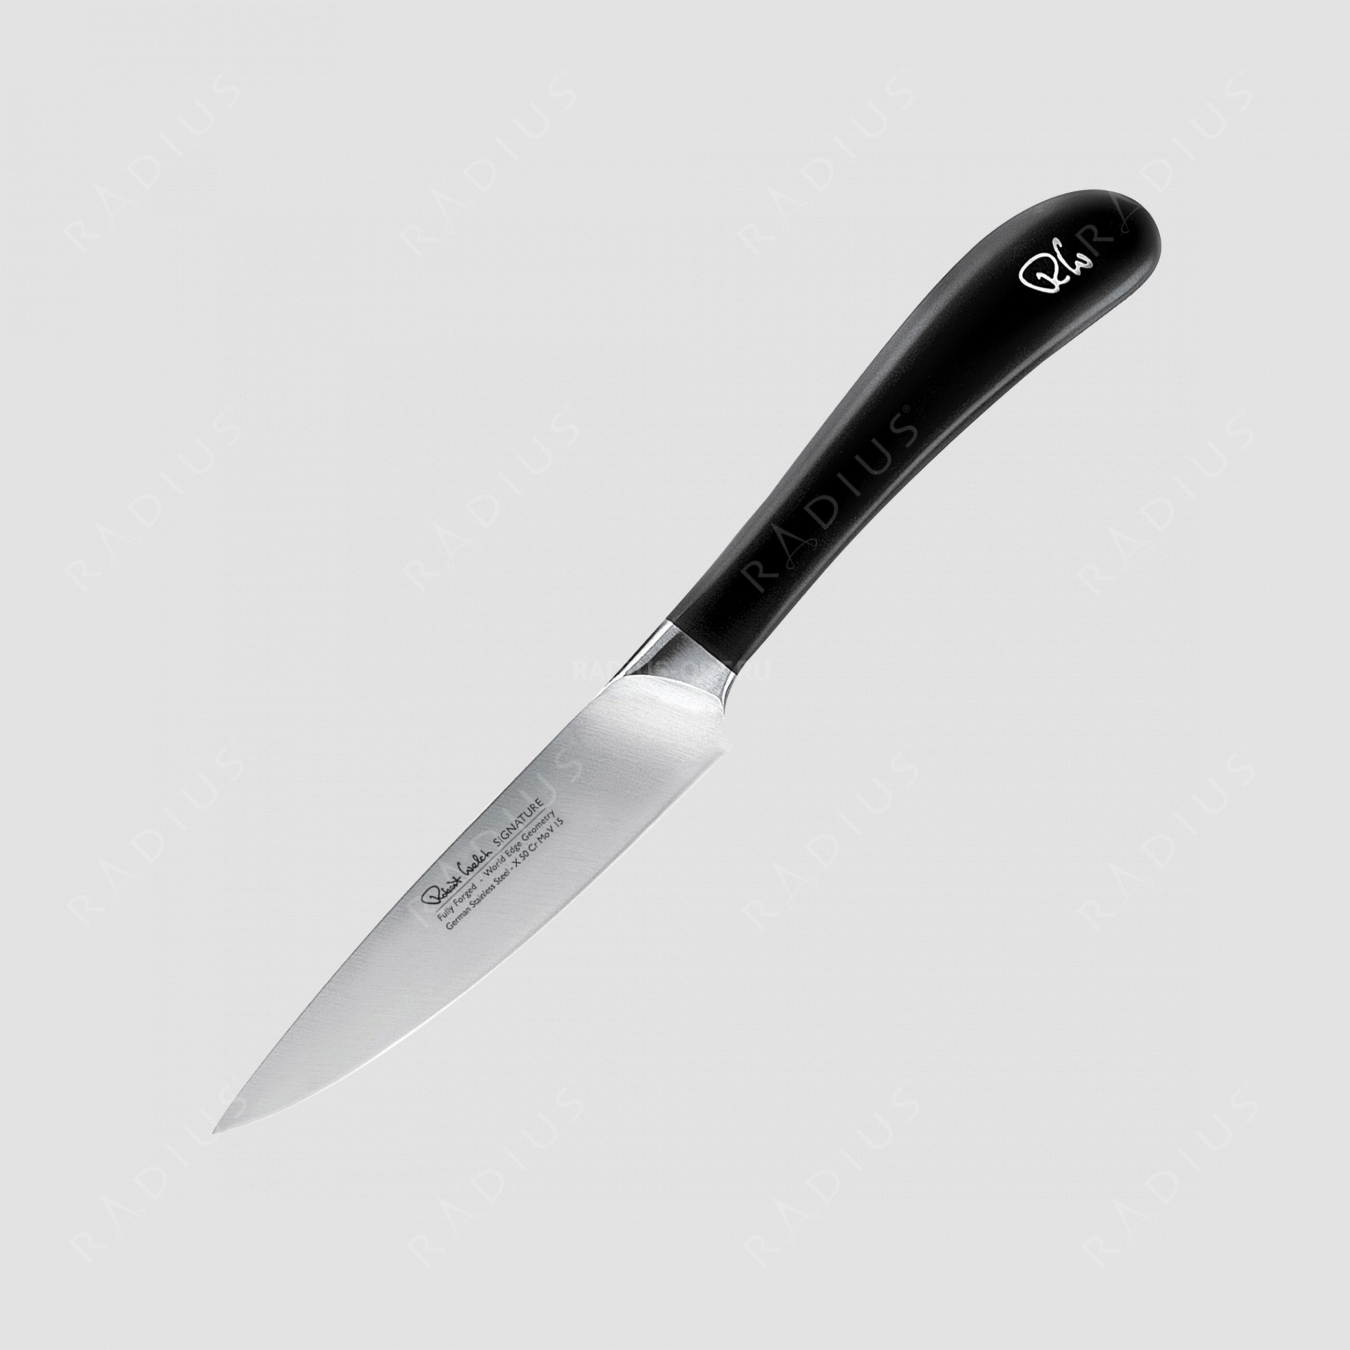 Нож кухонный для чистки овощей и фруктов 10 см, серия Signature, ROBERT WELCH, Великобритания